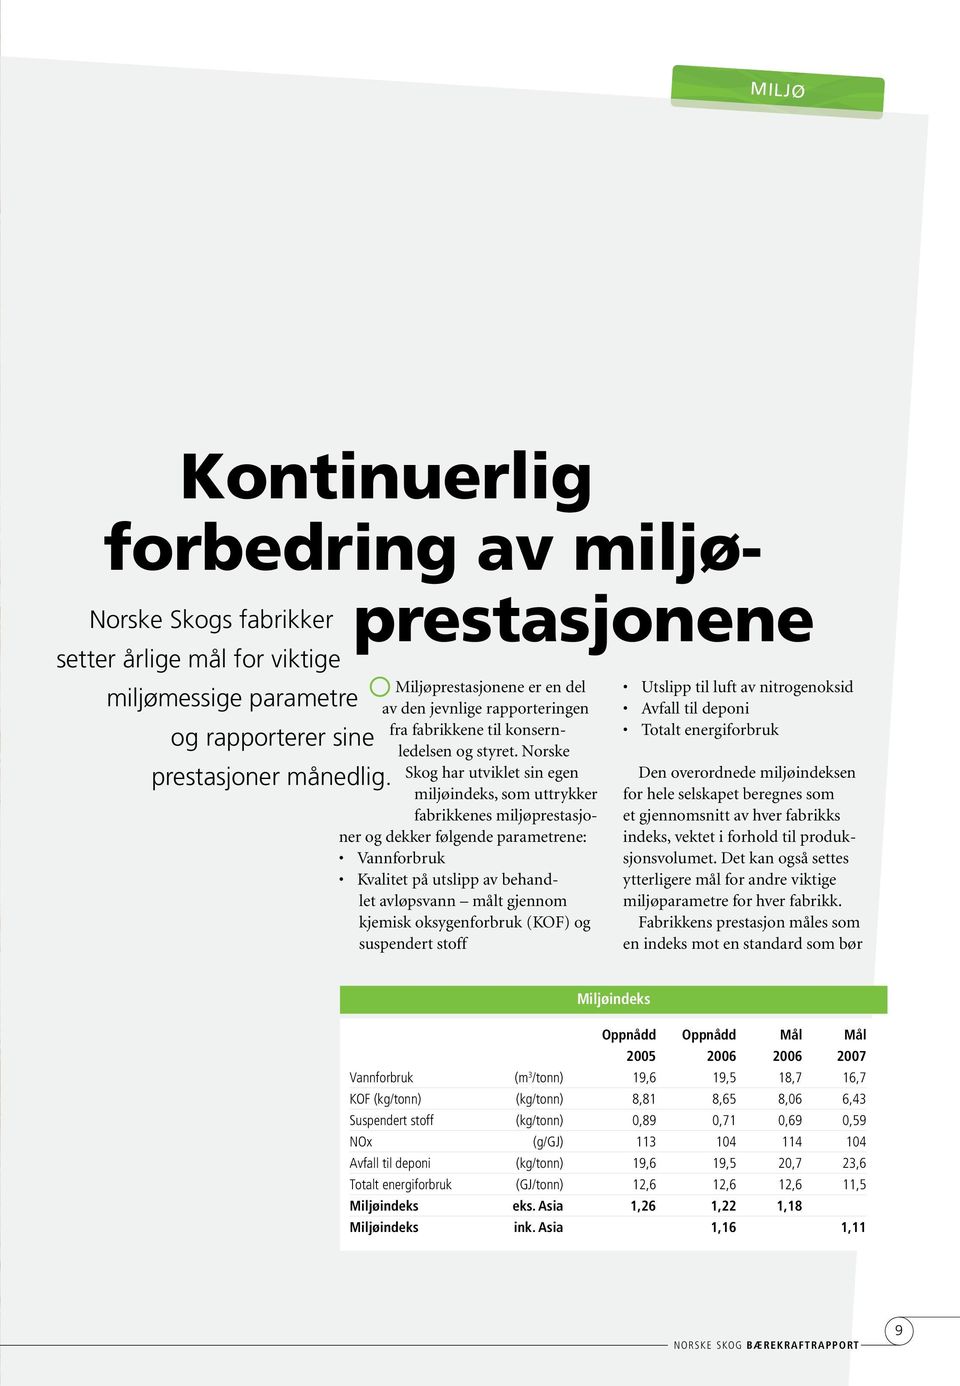 Norske Skog har utviklet sin egen miljøindeks, som uttrykker fabrikkenes miljøprestasjoner og dekker følgende parametrene: Vannforbruk Kvalitet på utslipp av behandlet avløpsvann målt gjennom kjemisk